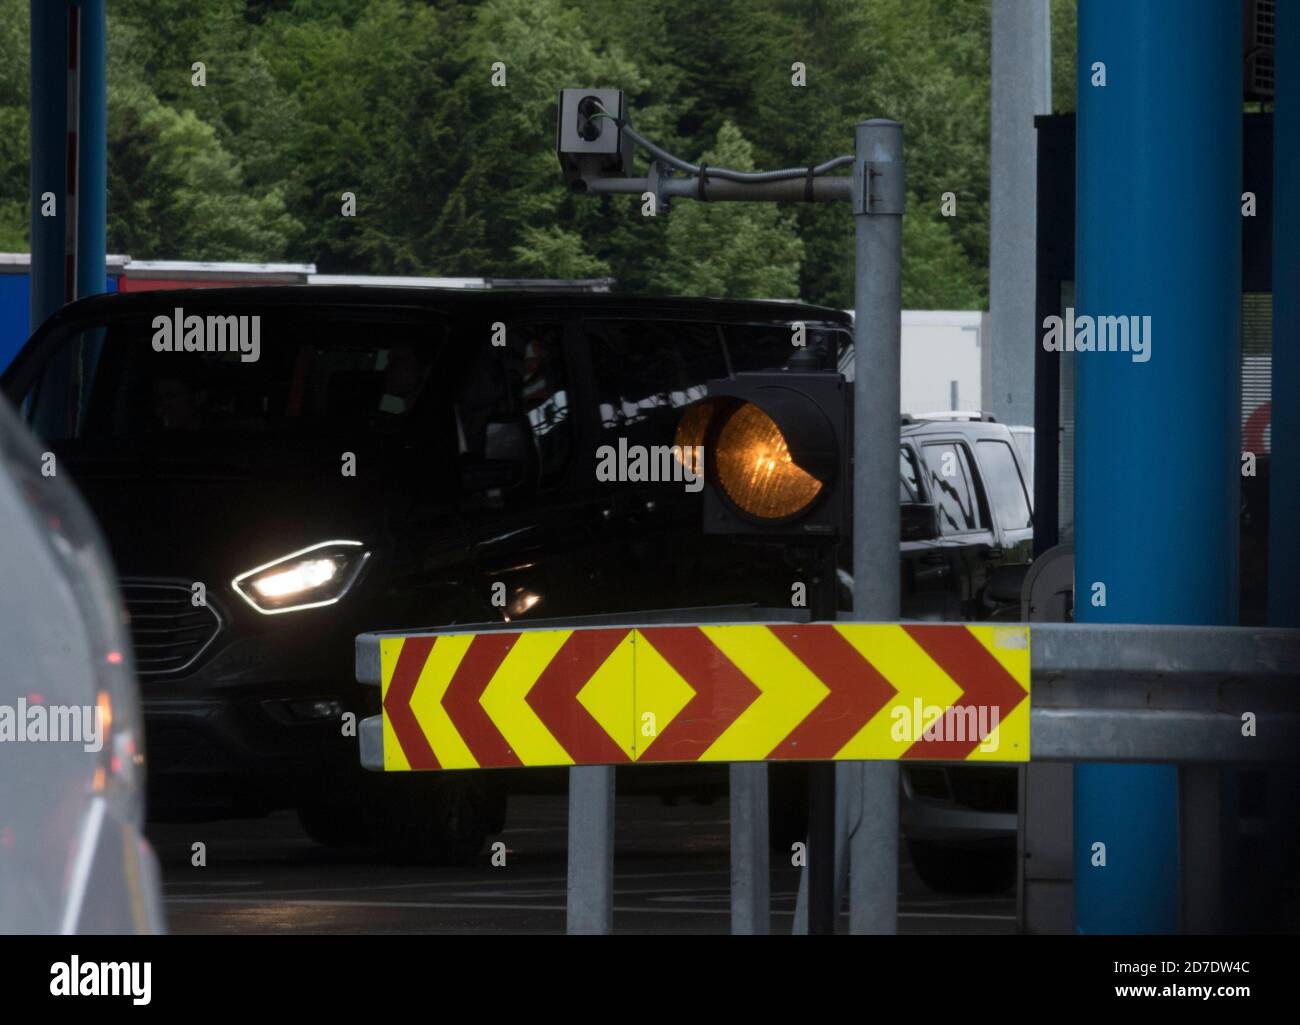 Orangefarbenes Blinklicht für ein Auto, Warnsignal im Straßenverkehr  Stockfotografie - Alamy